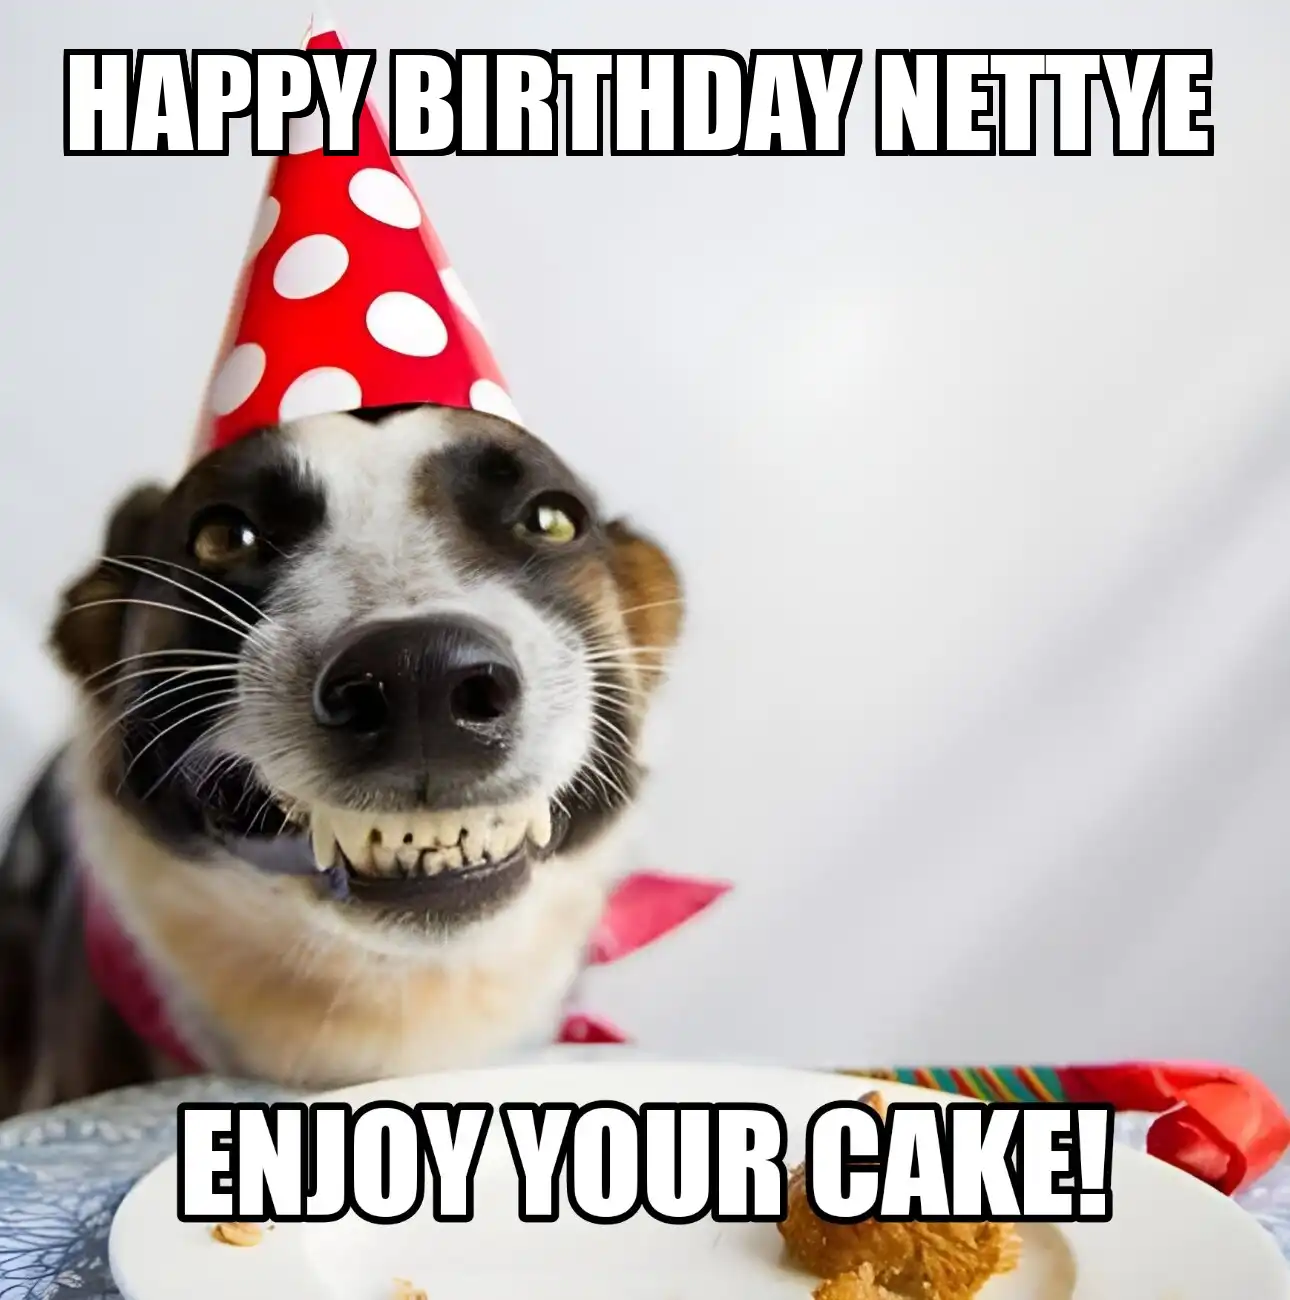 Happy Birthday Nettye Enjoy Your Cake Dog Meme